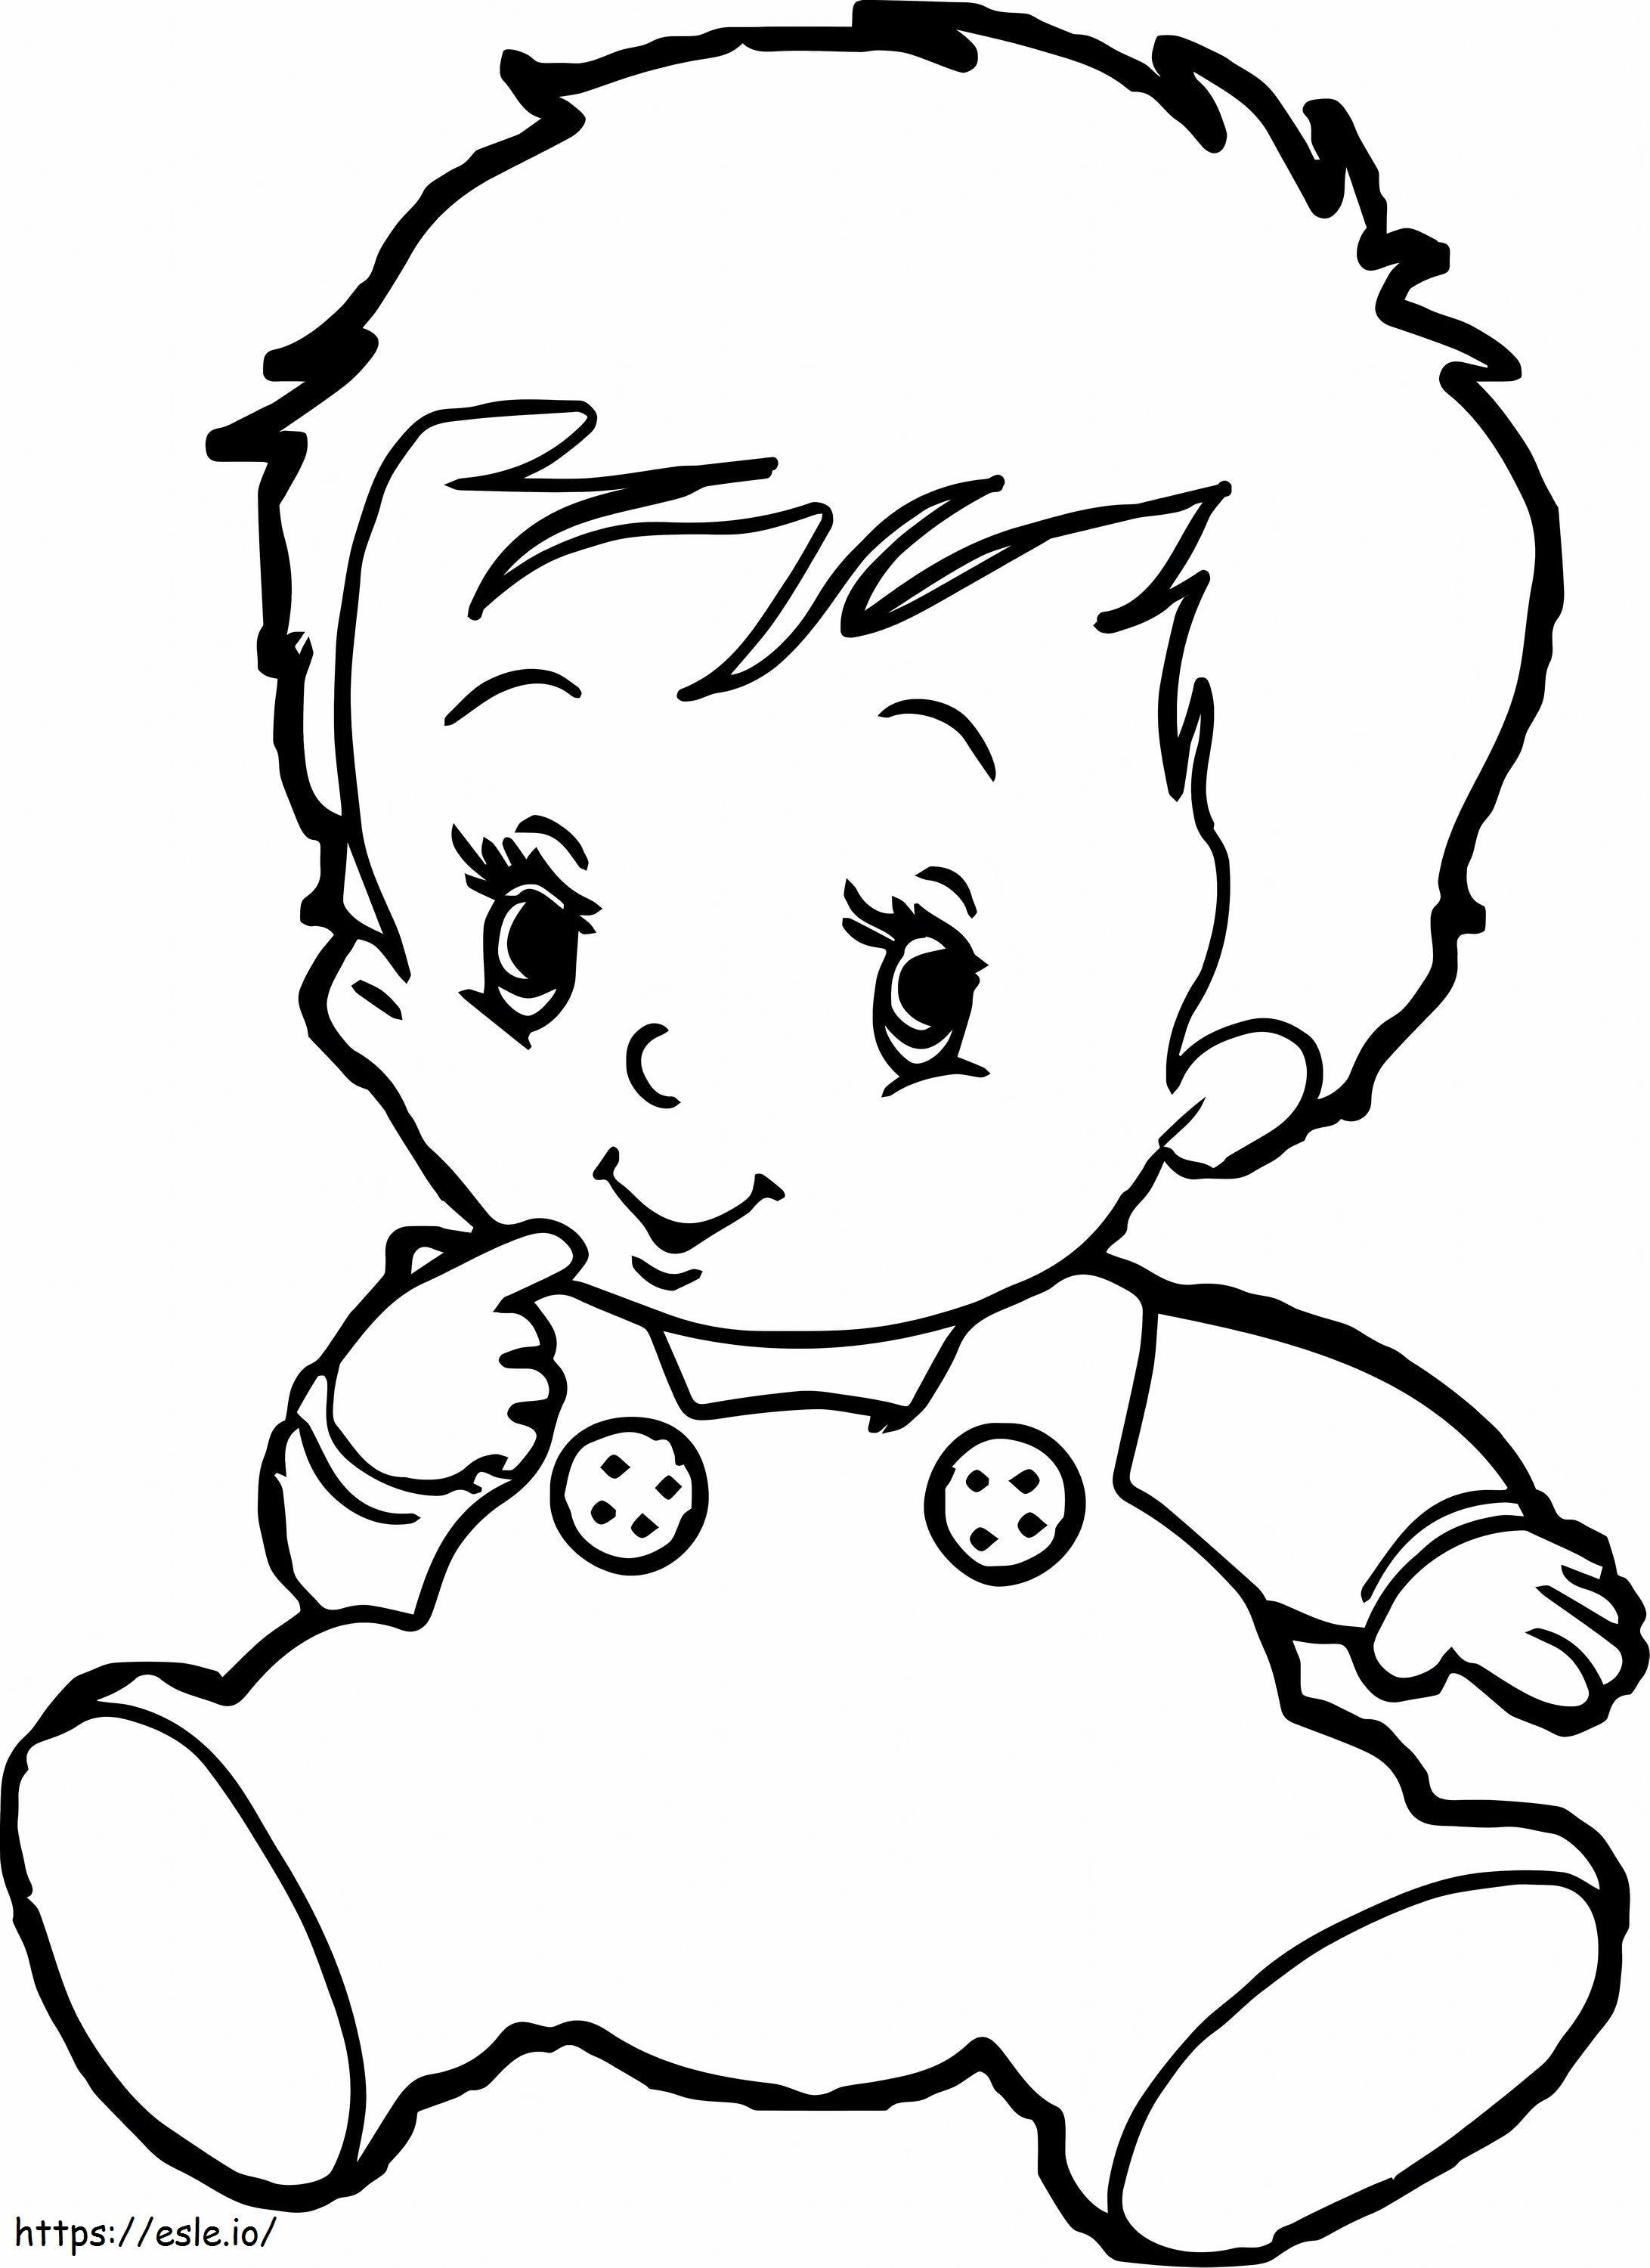 Siedzący rysunek dziecka kolorowanka